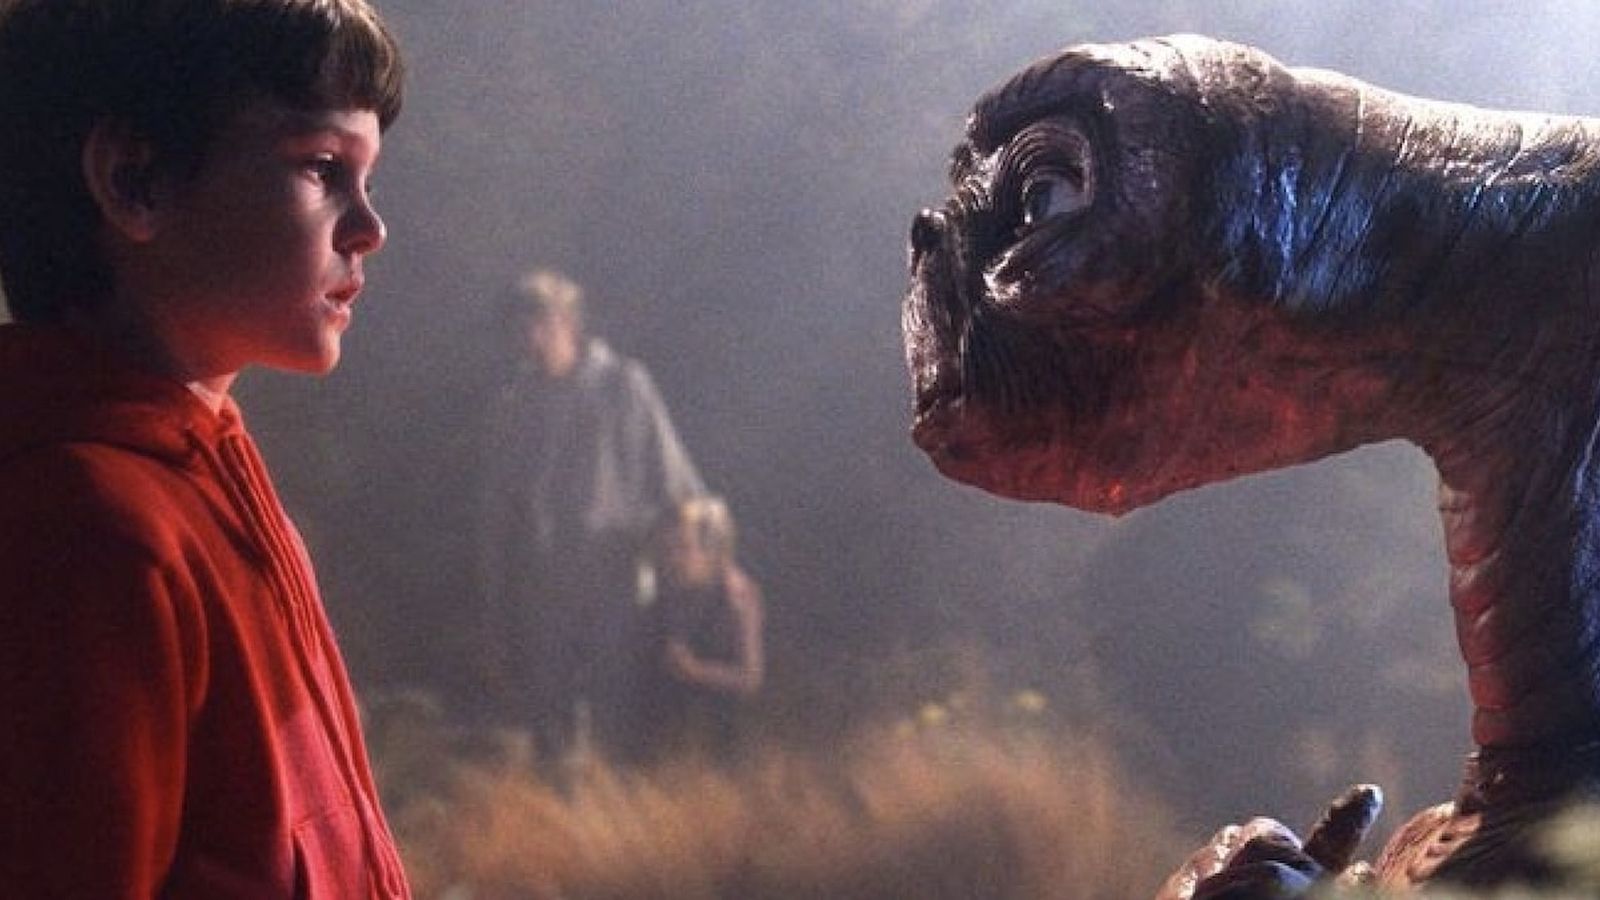 E.T. L'Extraterrestre, Steven Spielberg si pente di aver tolto le pistole dal film: 'È stato un errore'